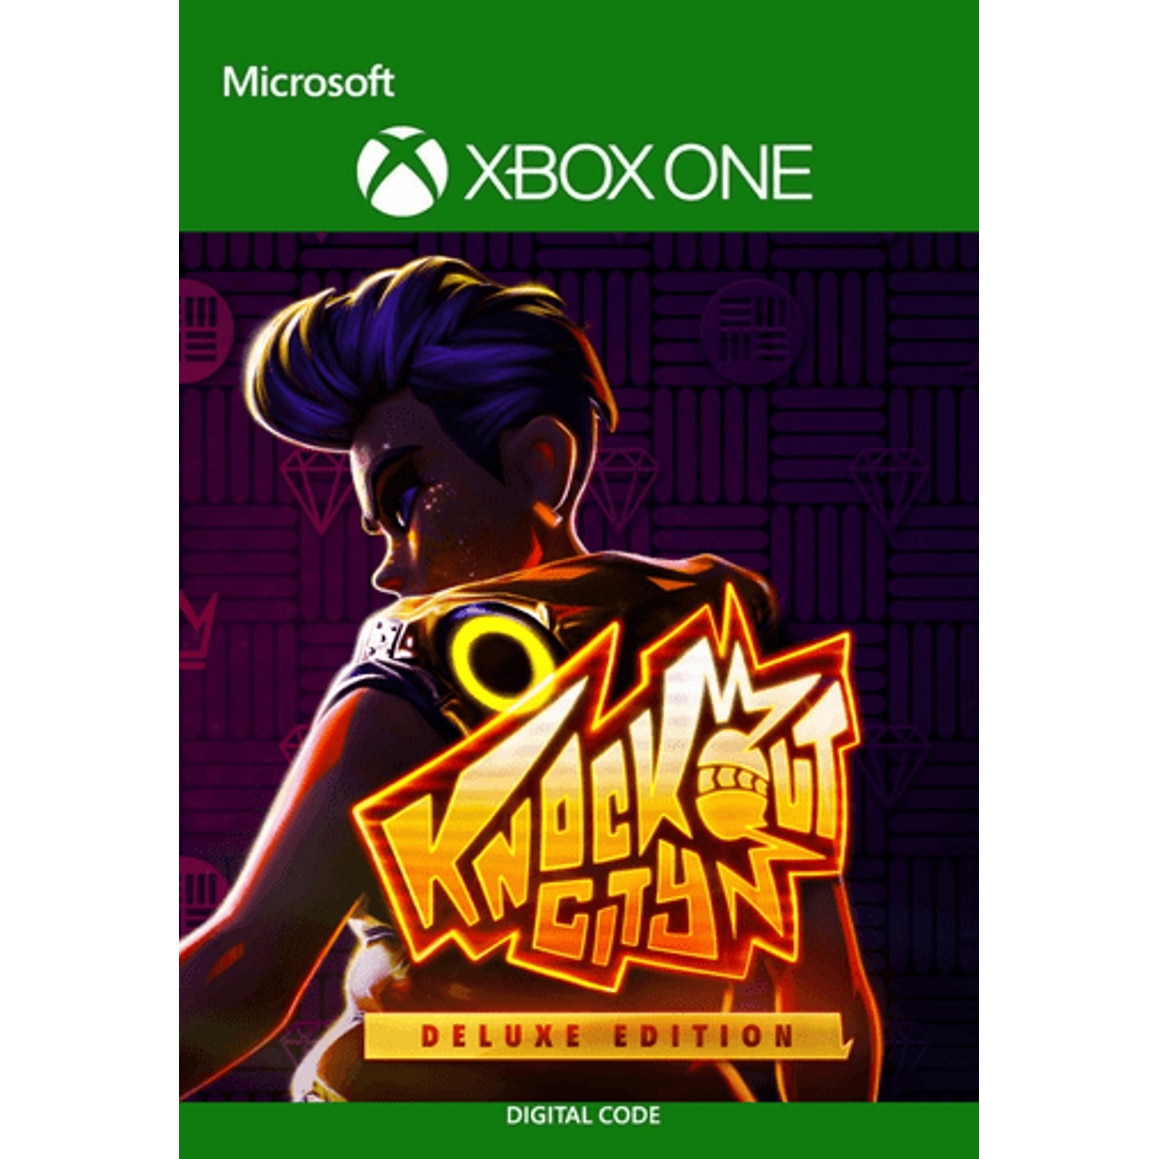 Knockout City - Xbox Series X, Xbox One [Digital] 